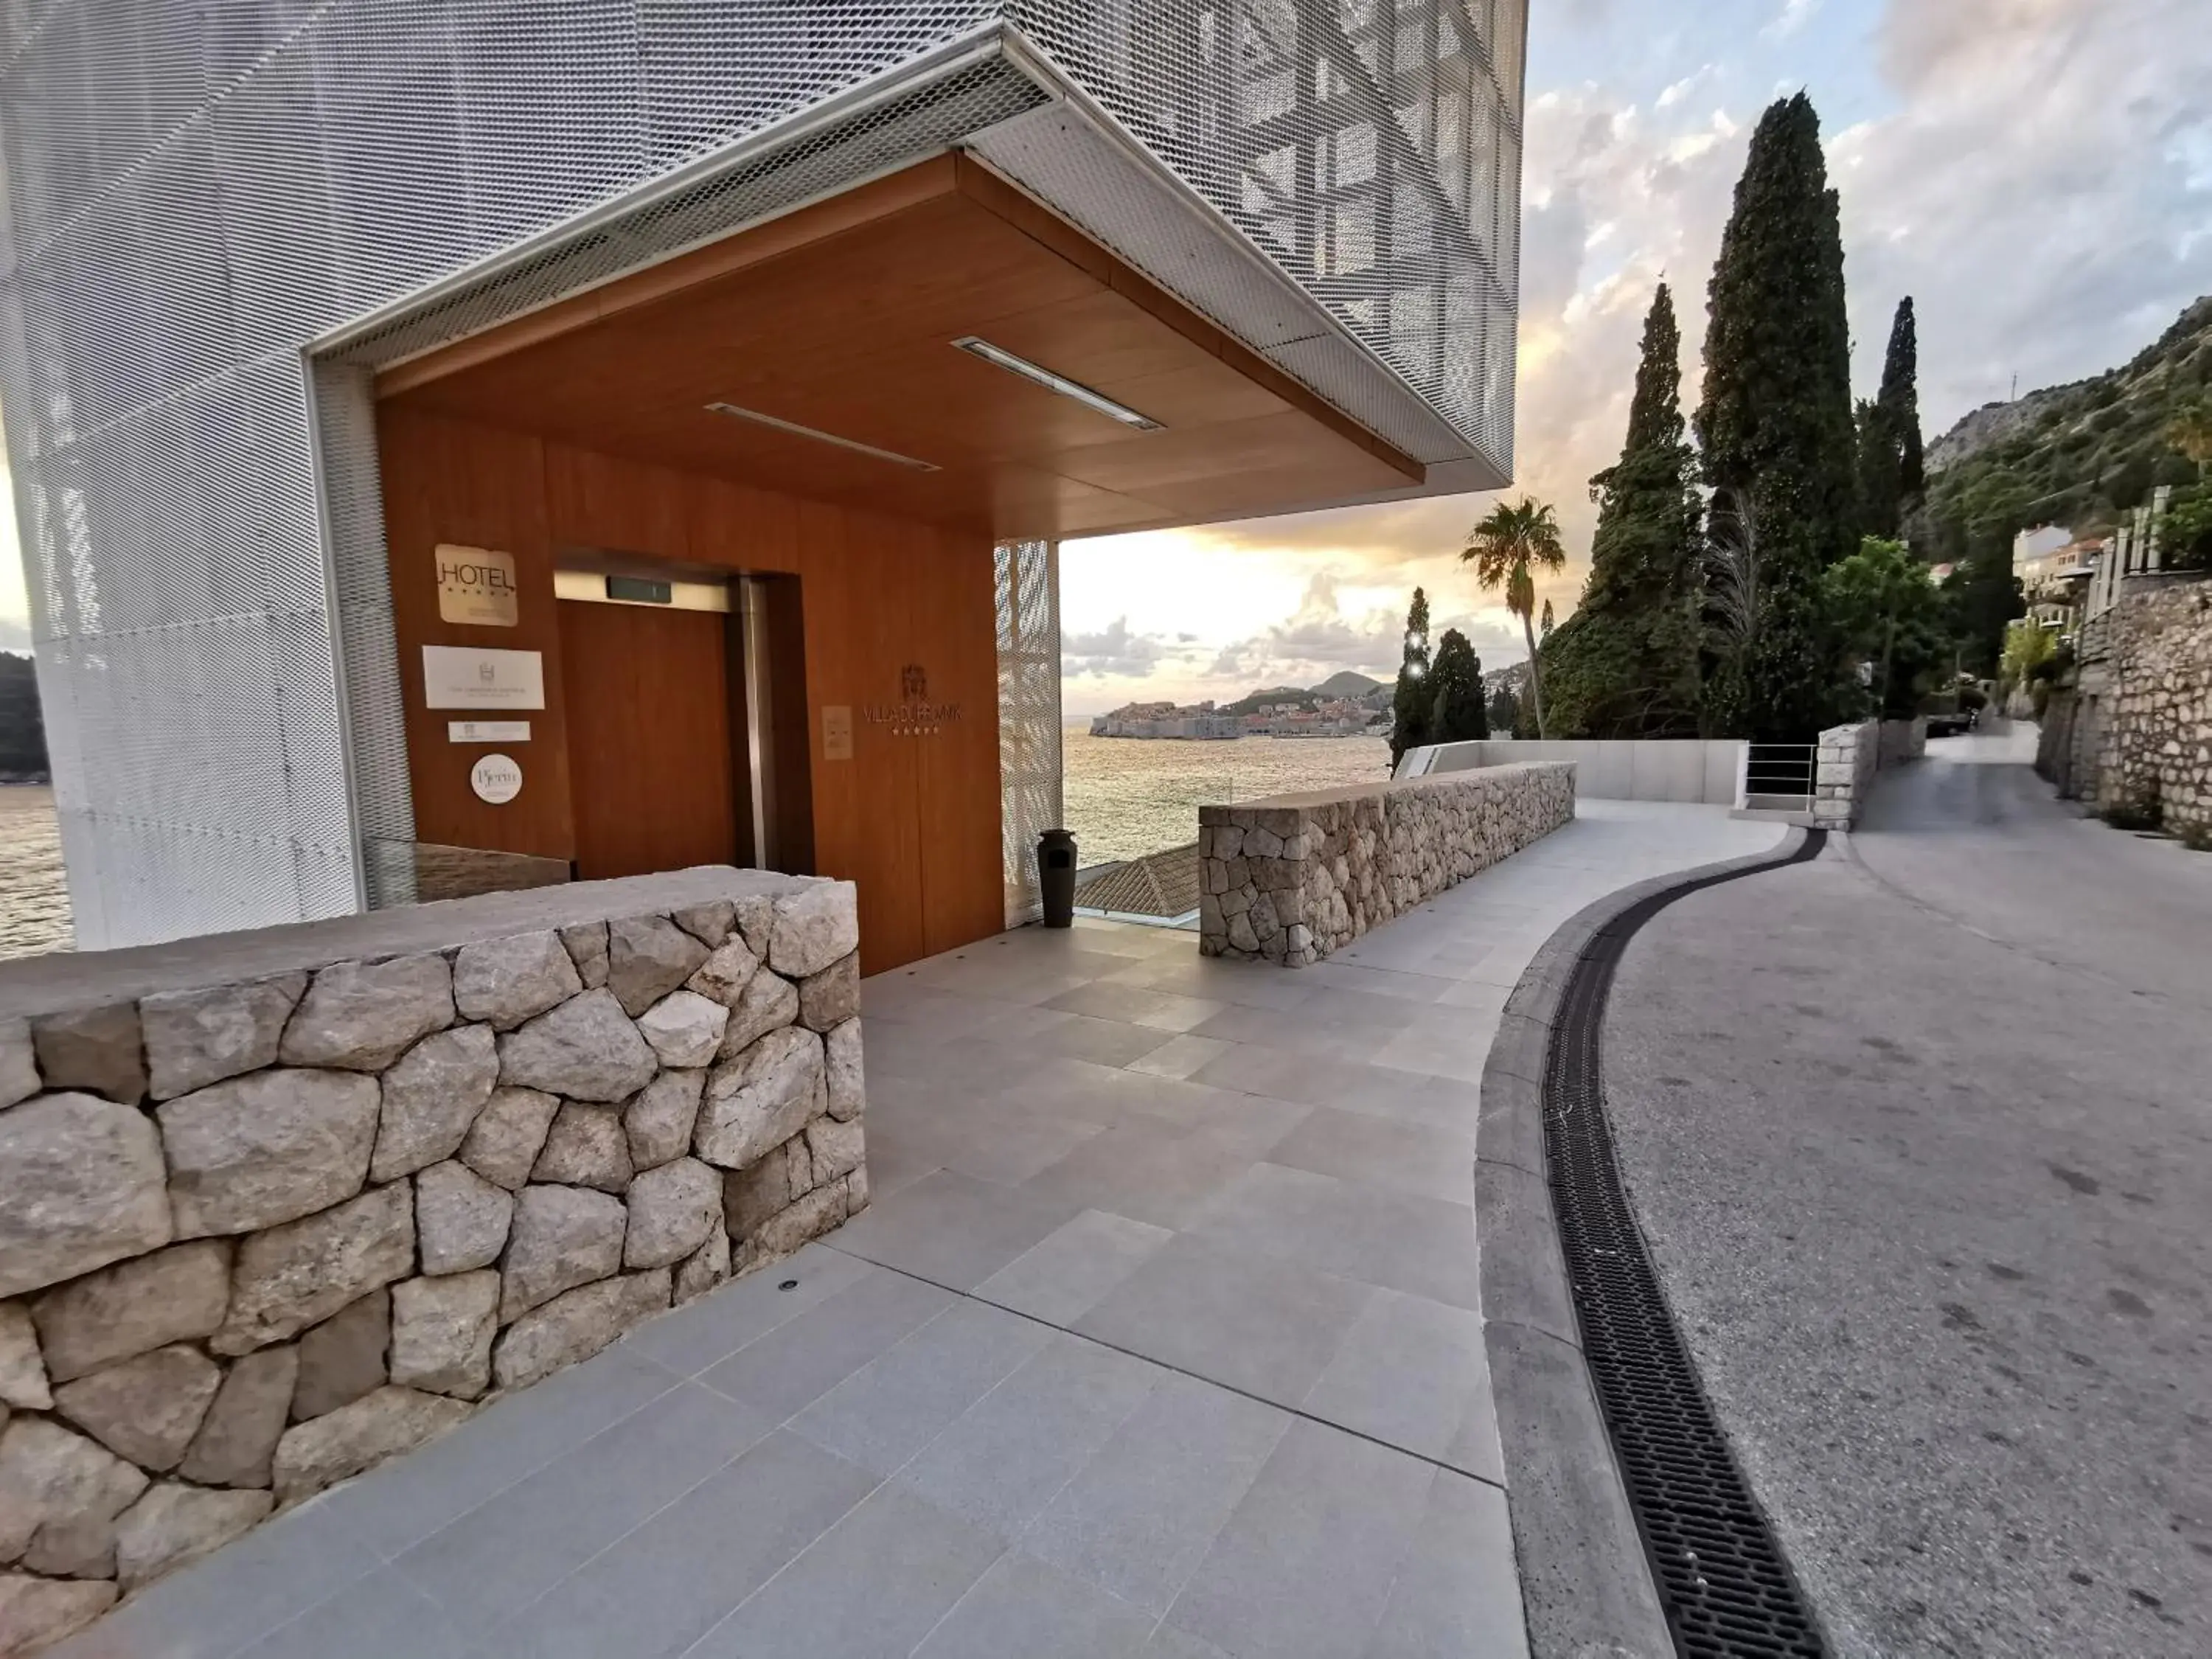 Facade/entrance in Villa Dubrovnik